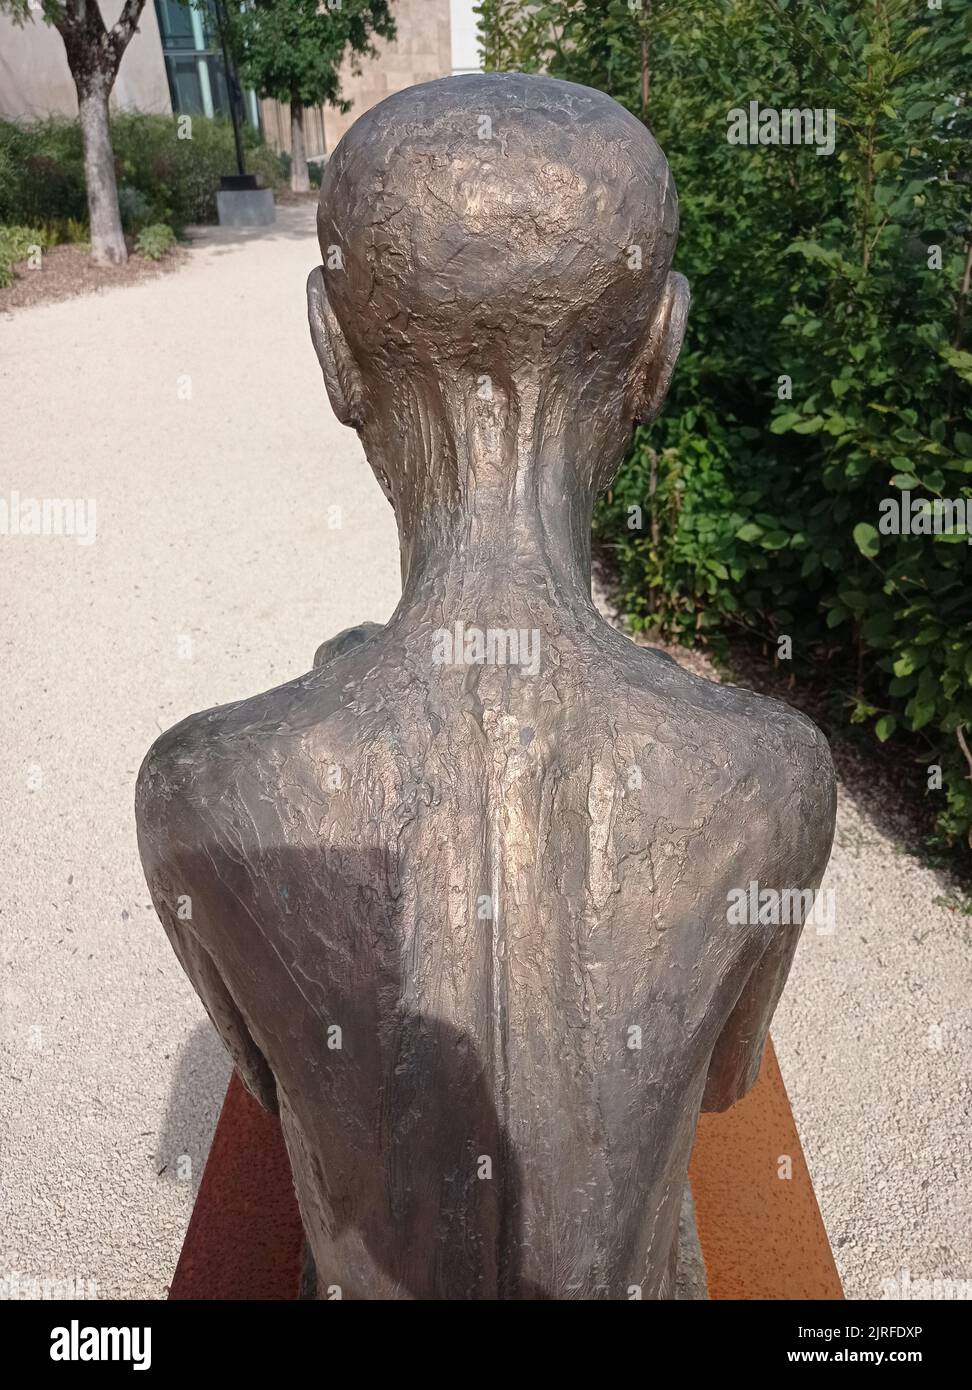 La Statue en Bronze d'un homme de dos dans un musée français. Stockfoto